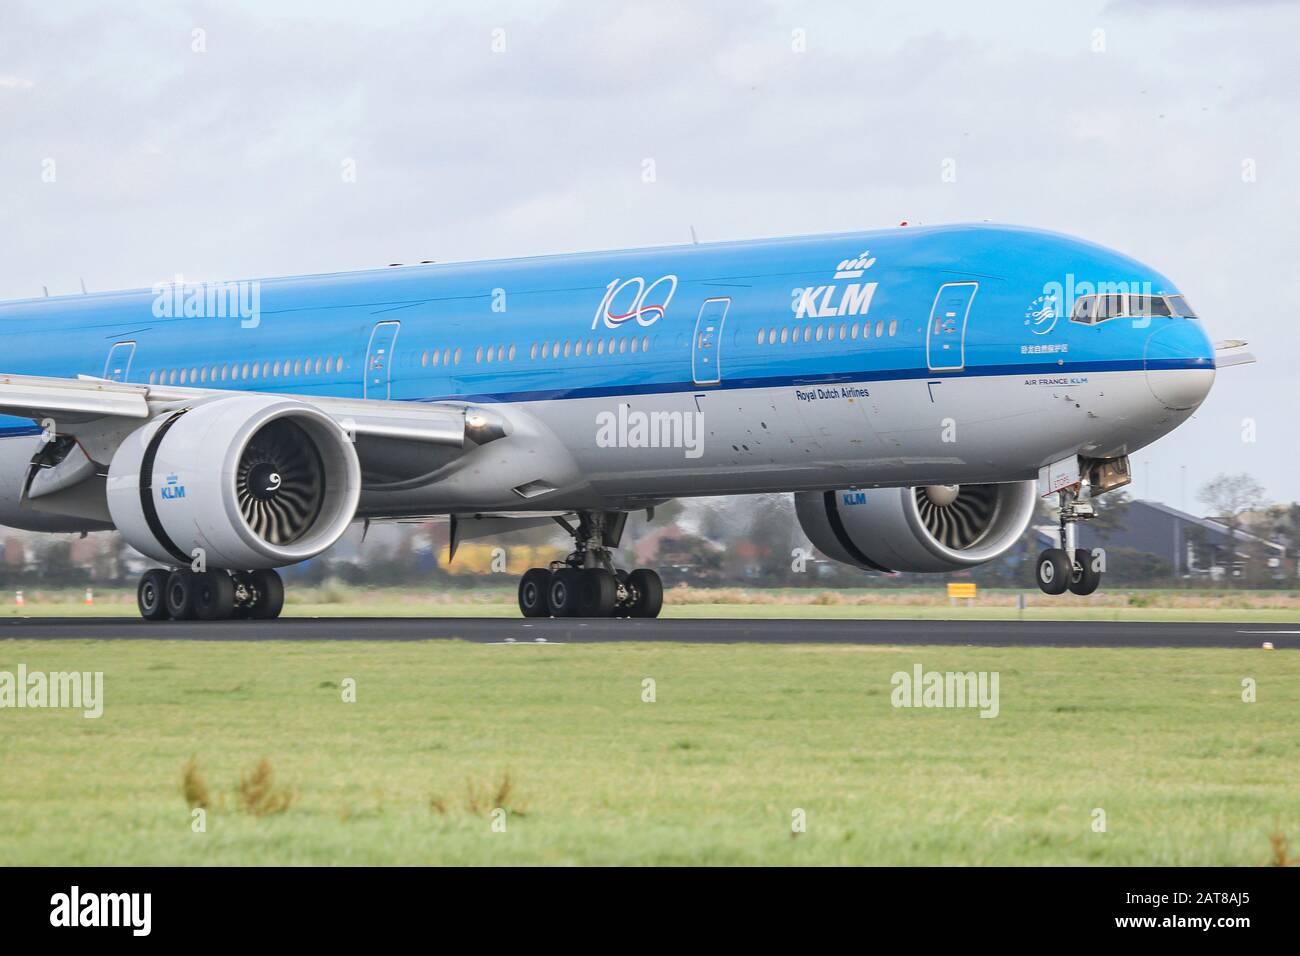 Un avión de cuerpo ancho Boeing 777-300 de KLM Royal Dutch Airlines aterriza en el aeropuerto Schiphol AMS EHAM de Ámsterdam, en los países Bajos, en la pista de Polderbaan. El avión cuenta con la certificación ETOPS para vuelos transatlánticos. Foto de stock